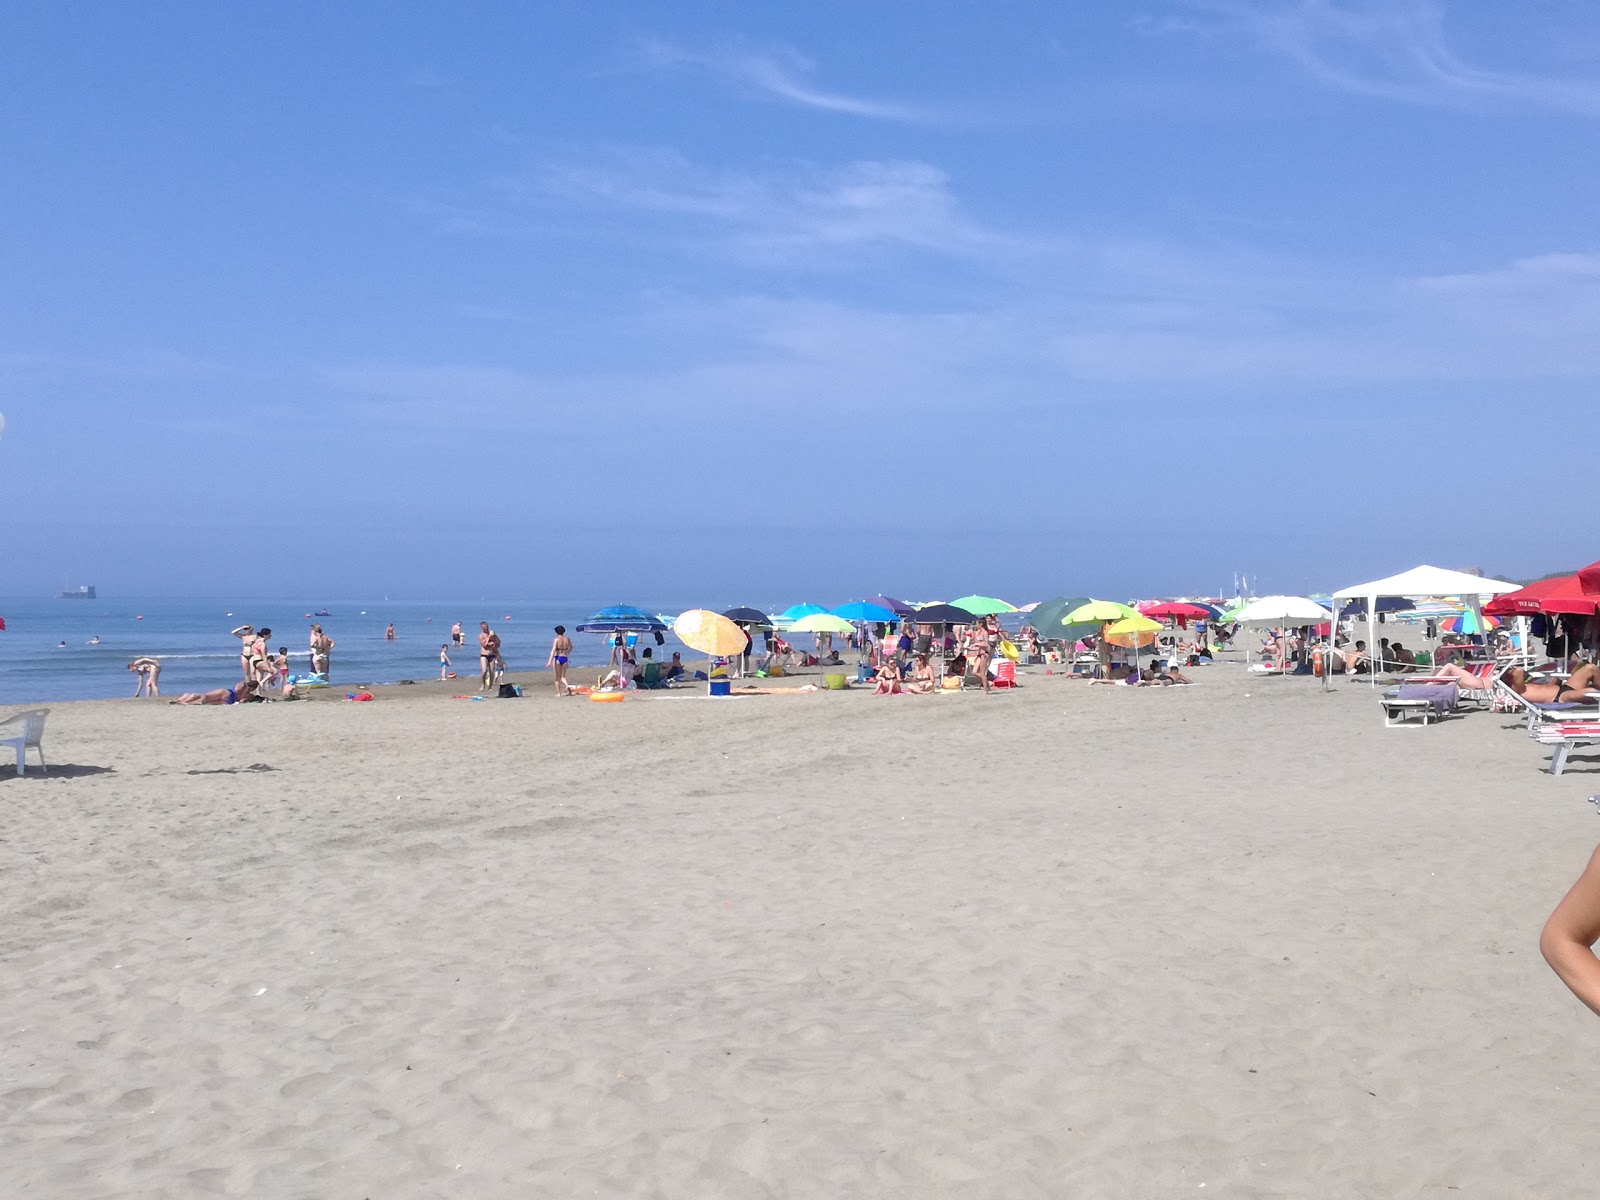 Foto av Spiaggia Attrezzata och bosättningen